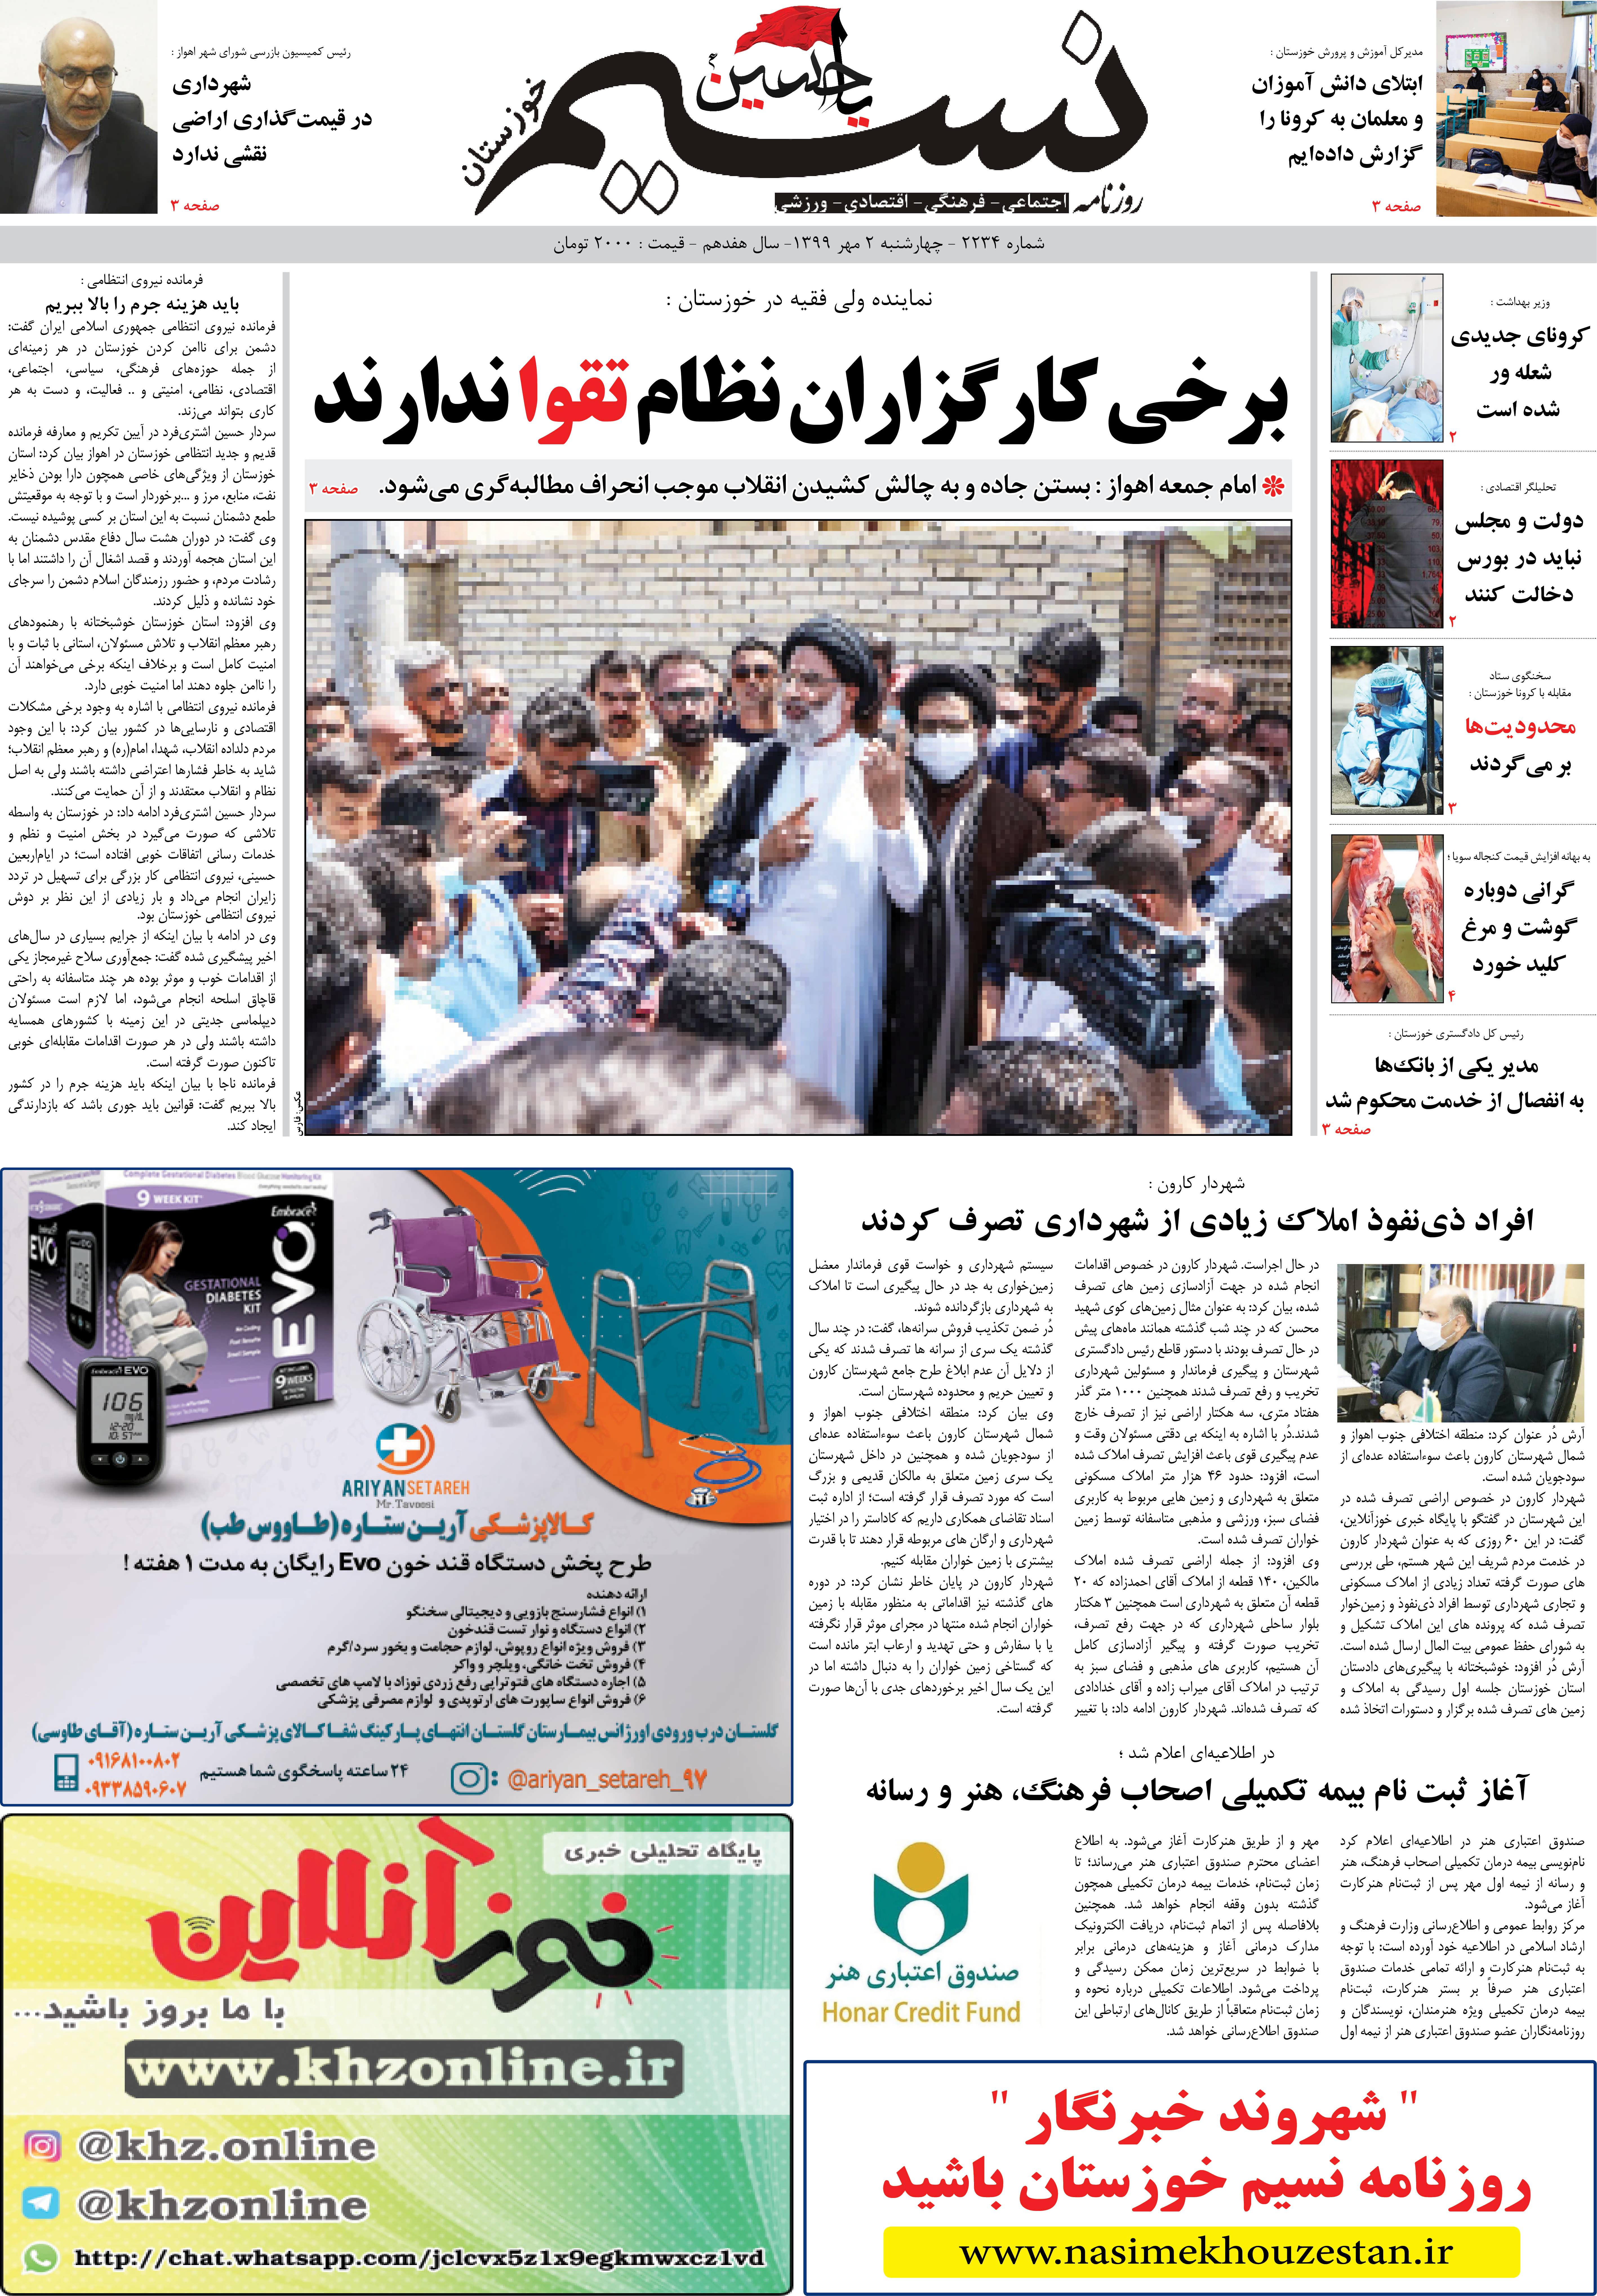 صفحه اصلی روزنامه نسیم شماره 2234 